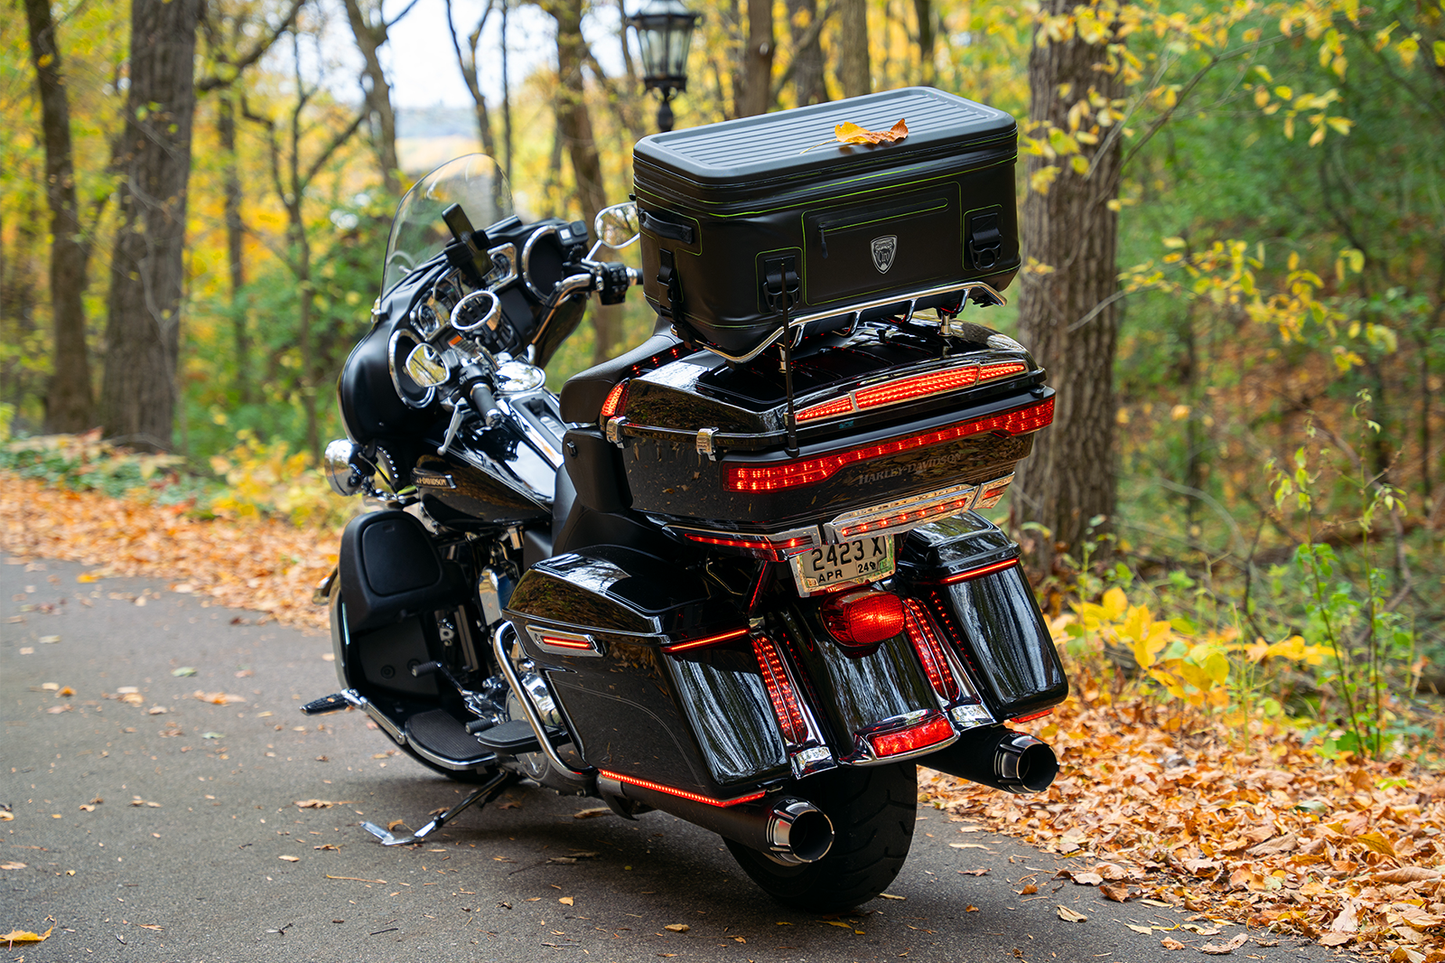 Dryforcetm schneller Freisetzung wasserdichte Kühler für Harley Davidson